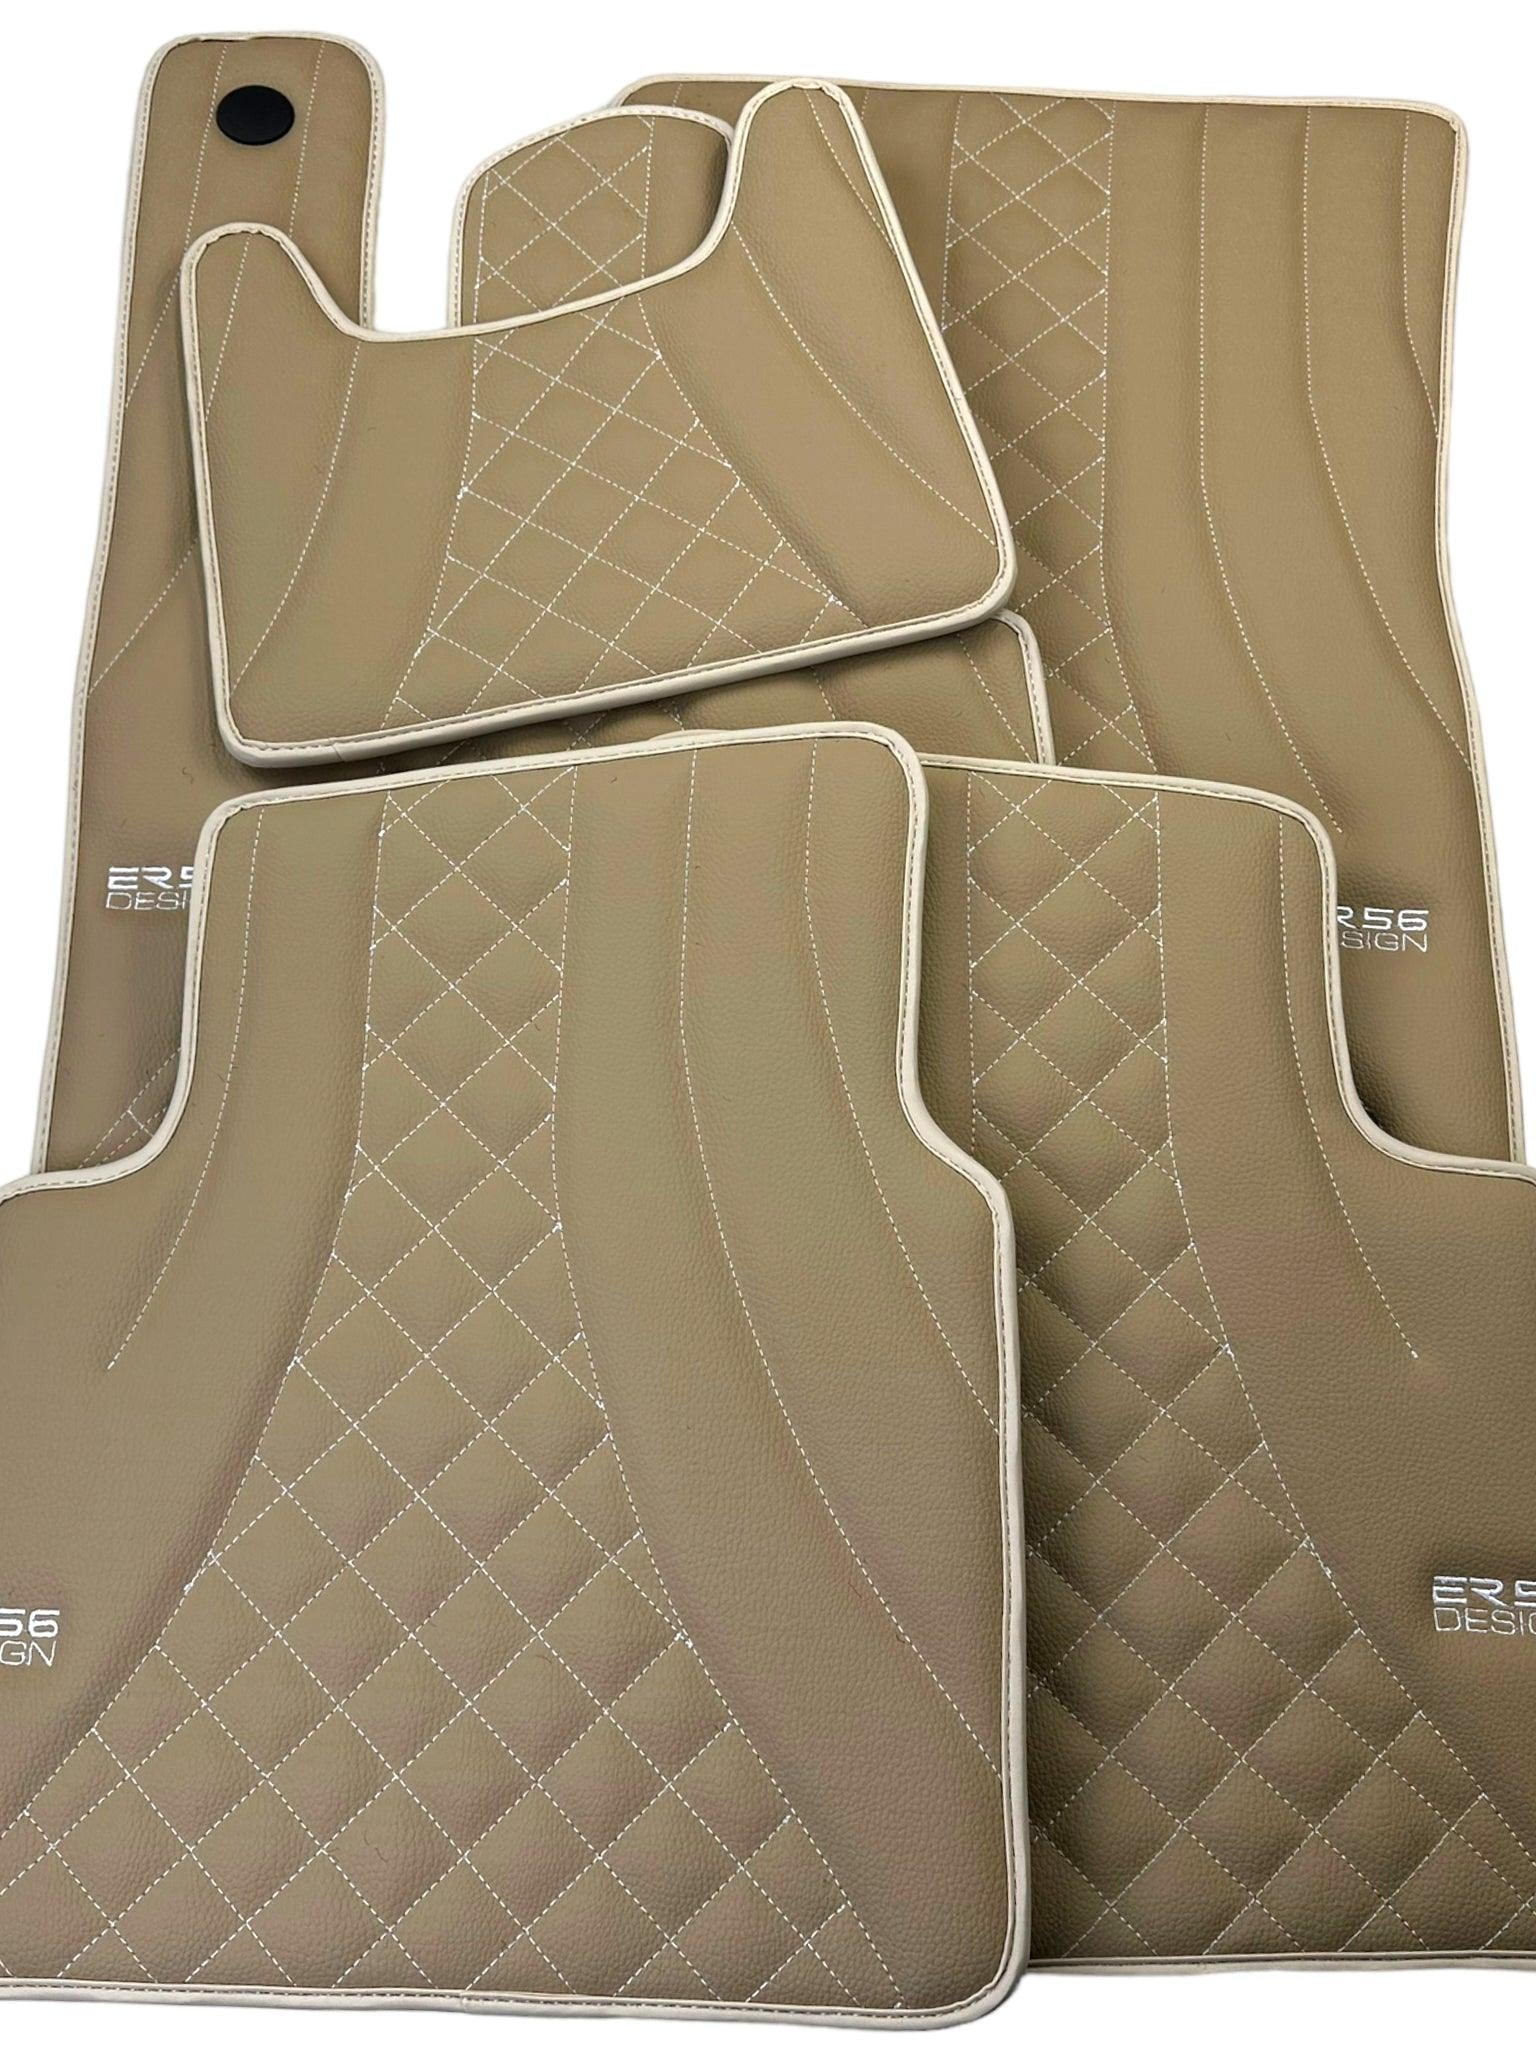 Beige Leather Floor Mats for Mercedes-Benz G Class W461 (1979-2008) ER56 Design